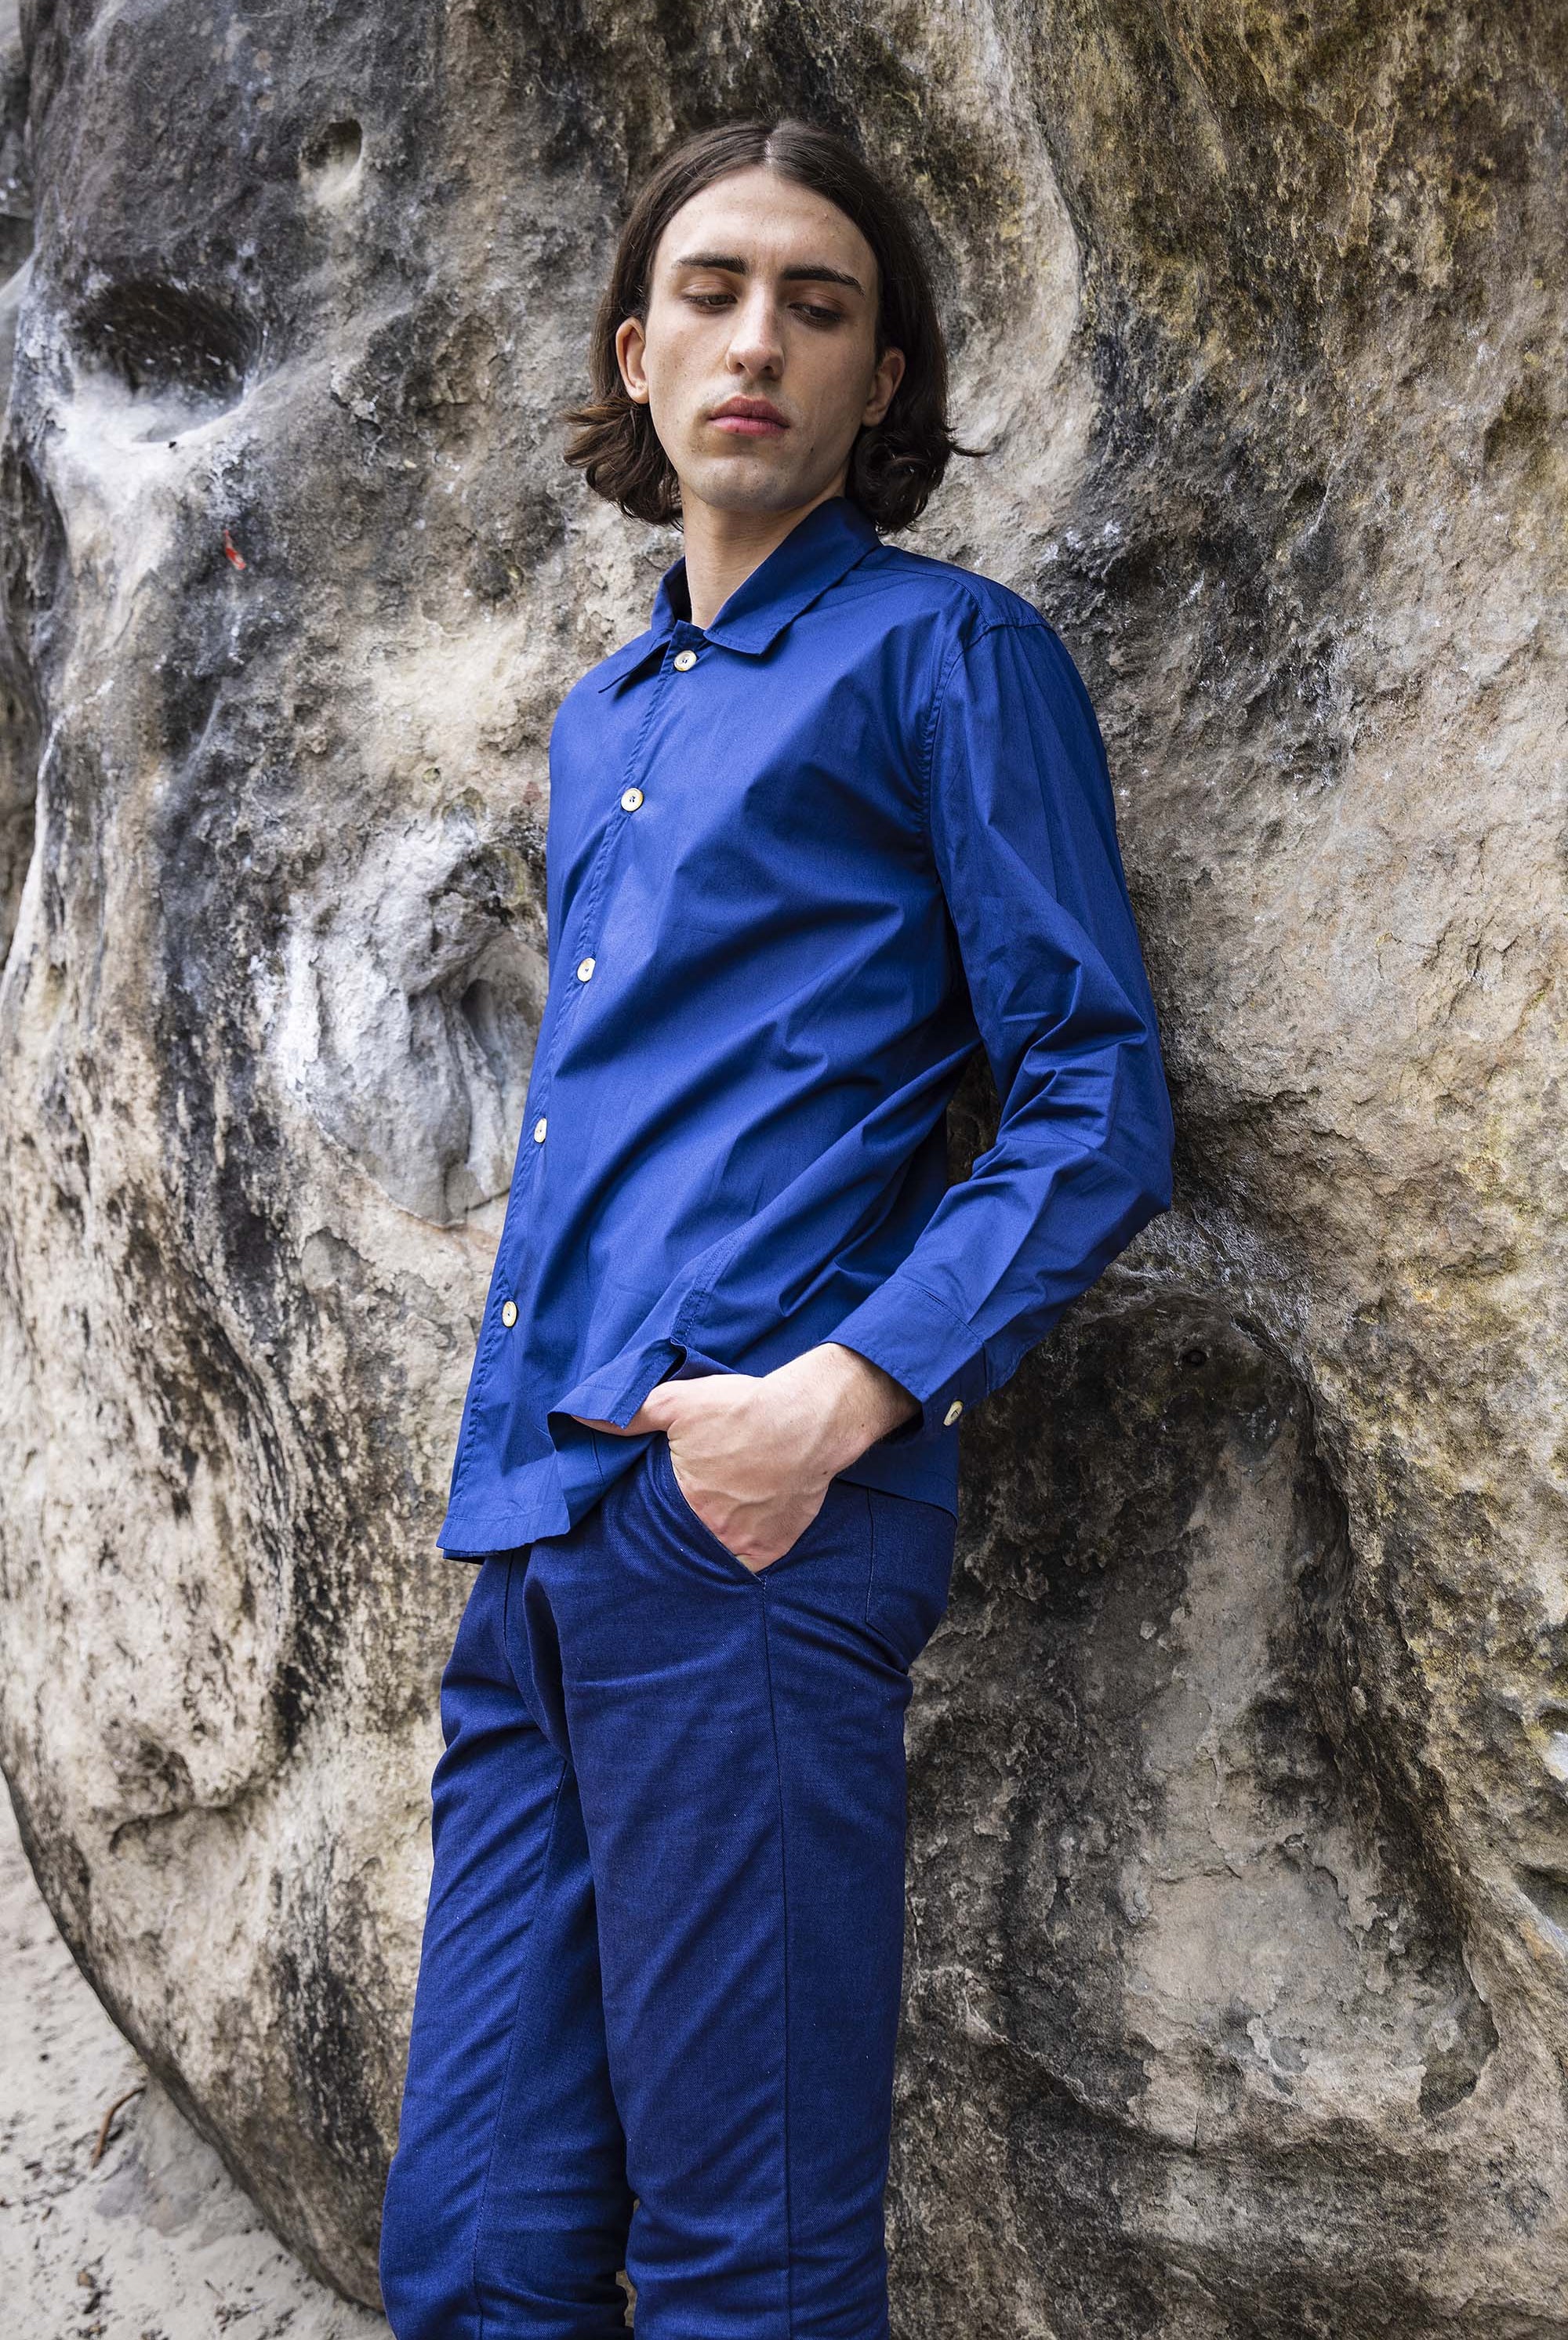 Chemise Lorenzo Bleu Saphir slim fit, ajustée, chic et élégante, chemise mode fashion commerce équitable